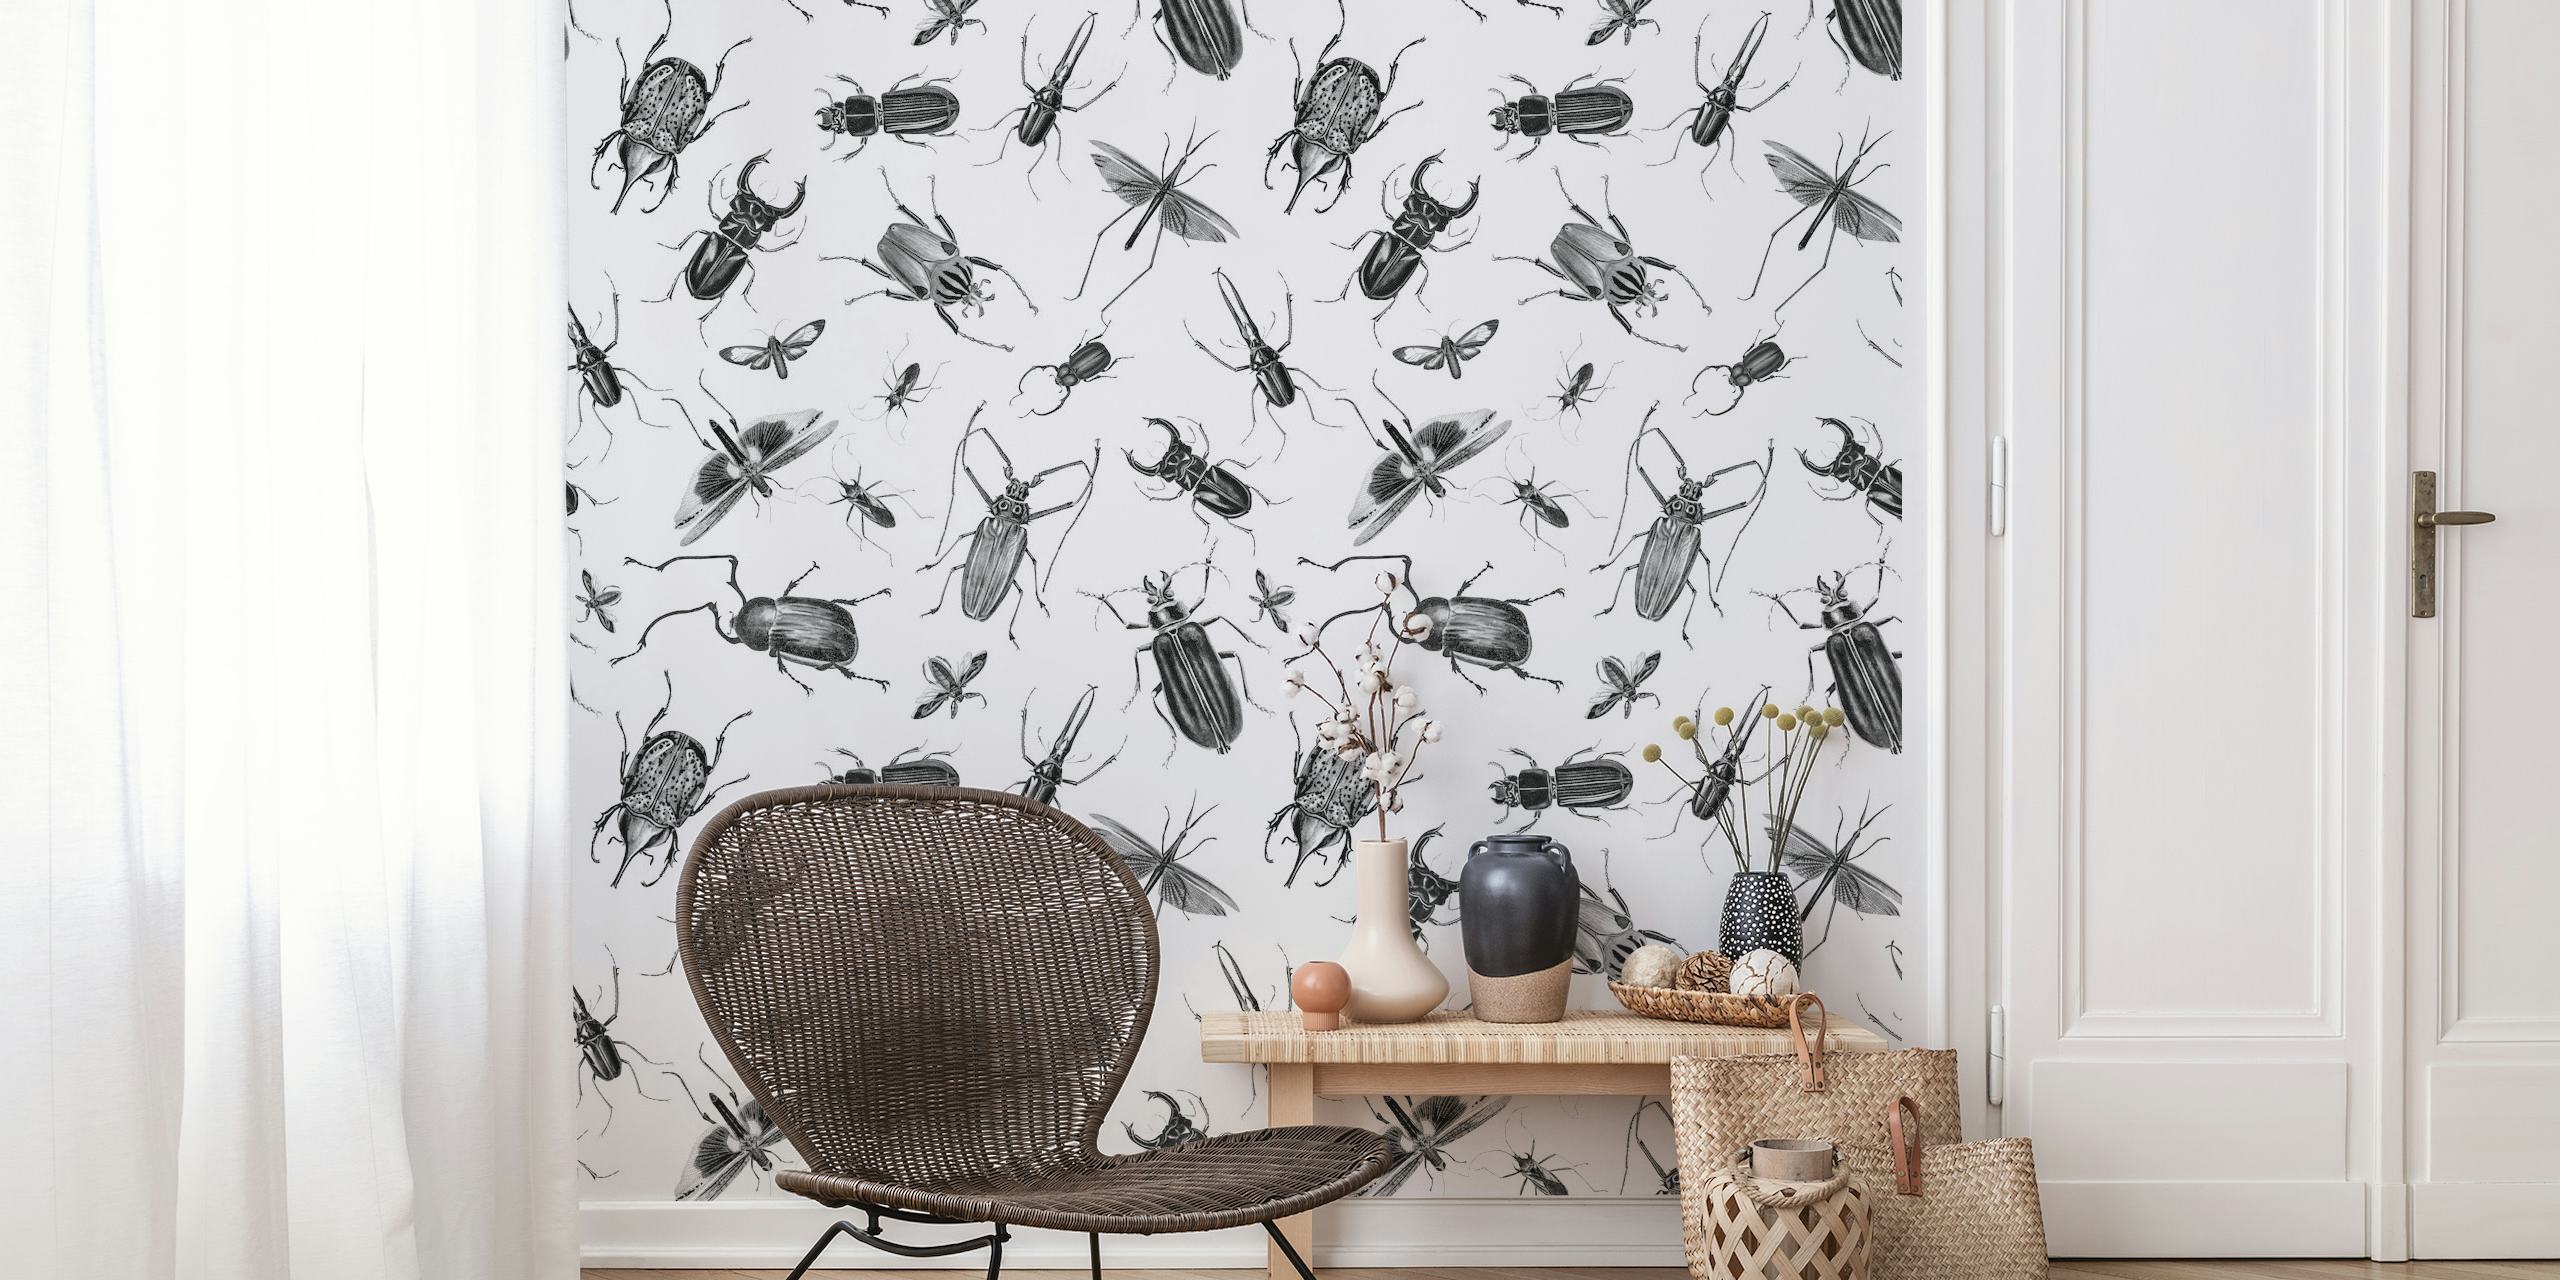 Vintage Beetles And Bugs papiers peint